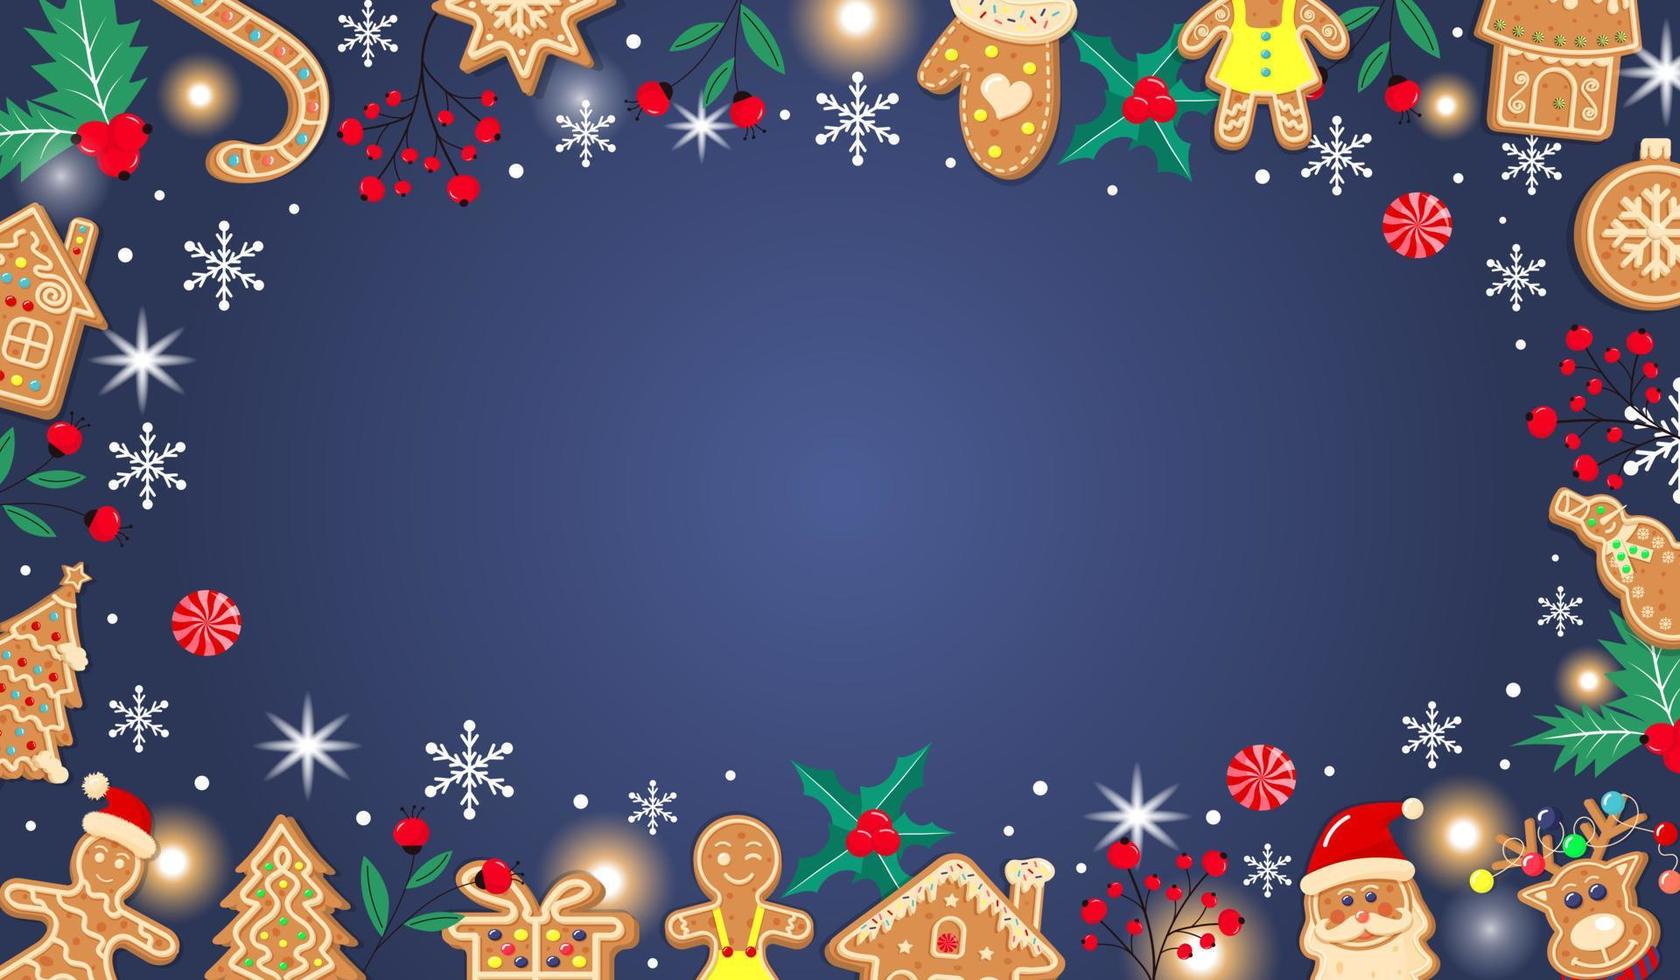 fundo de gengibre de Natal azul escuro horizontal. projeto de natal com biscoitos, bagas de inverno, flocos de neve, neve, luzes e doces. espaço vazio para o seu texto. vetor